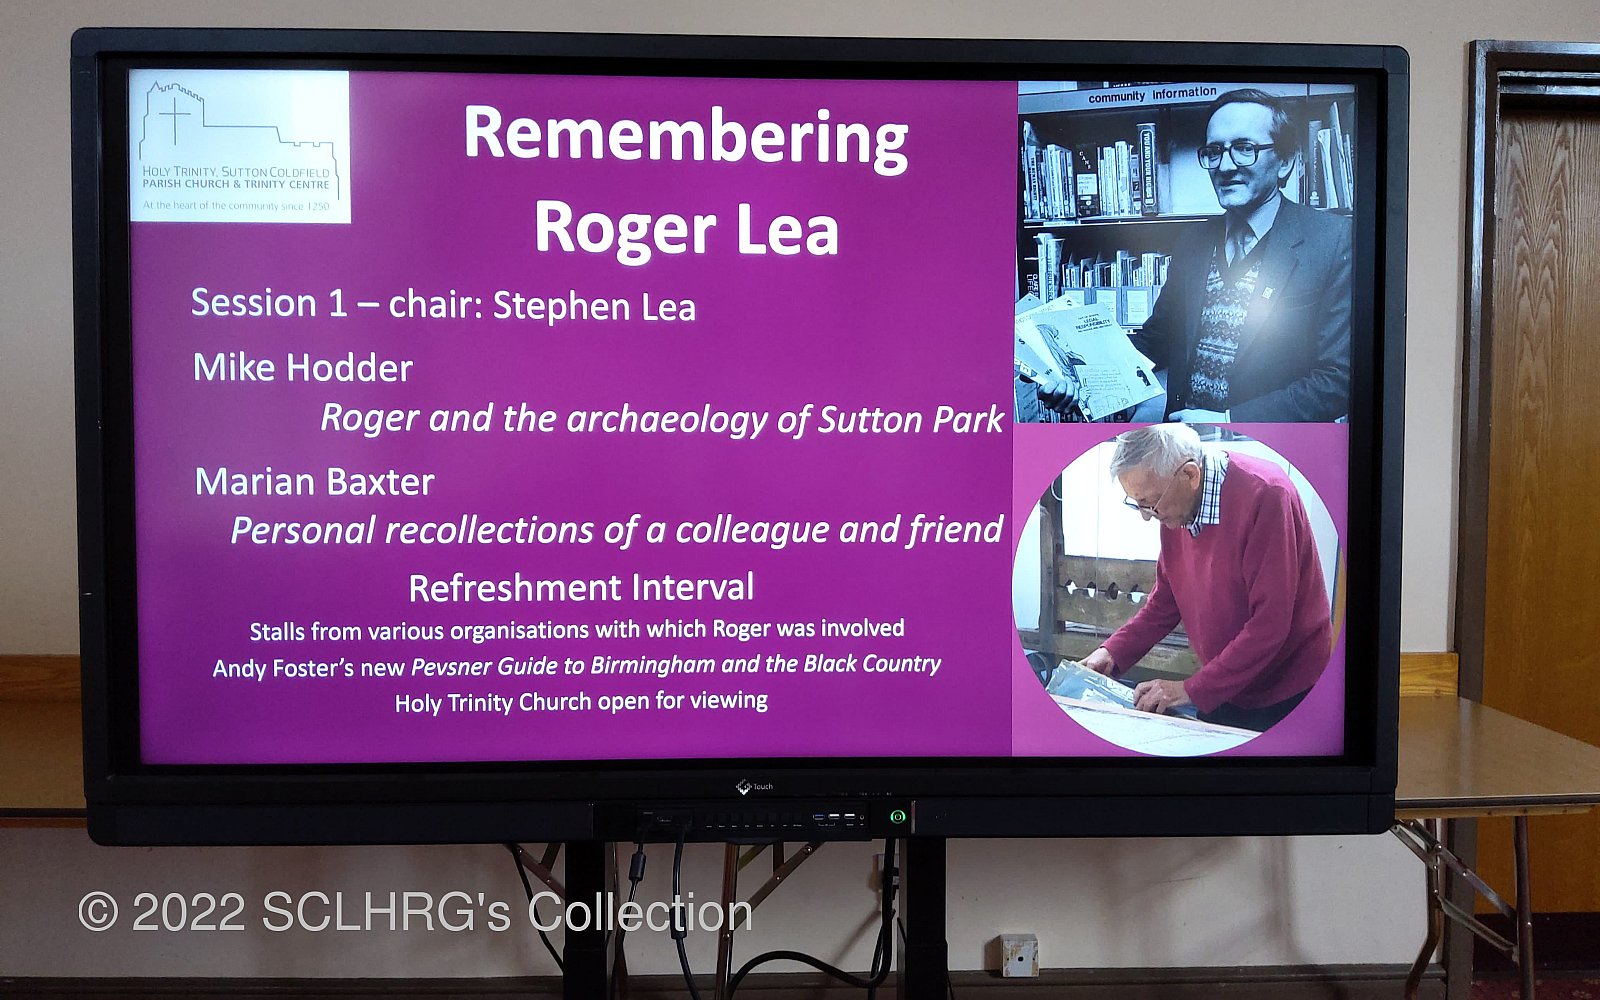 A Résumé of the Remembering Roger Lea Event 26th June, 2022